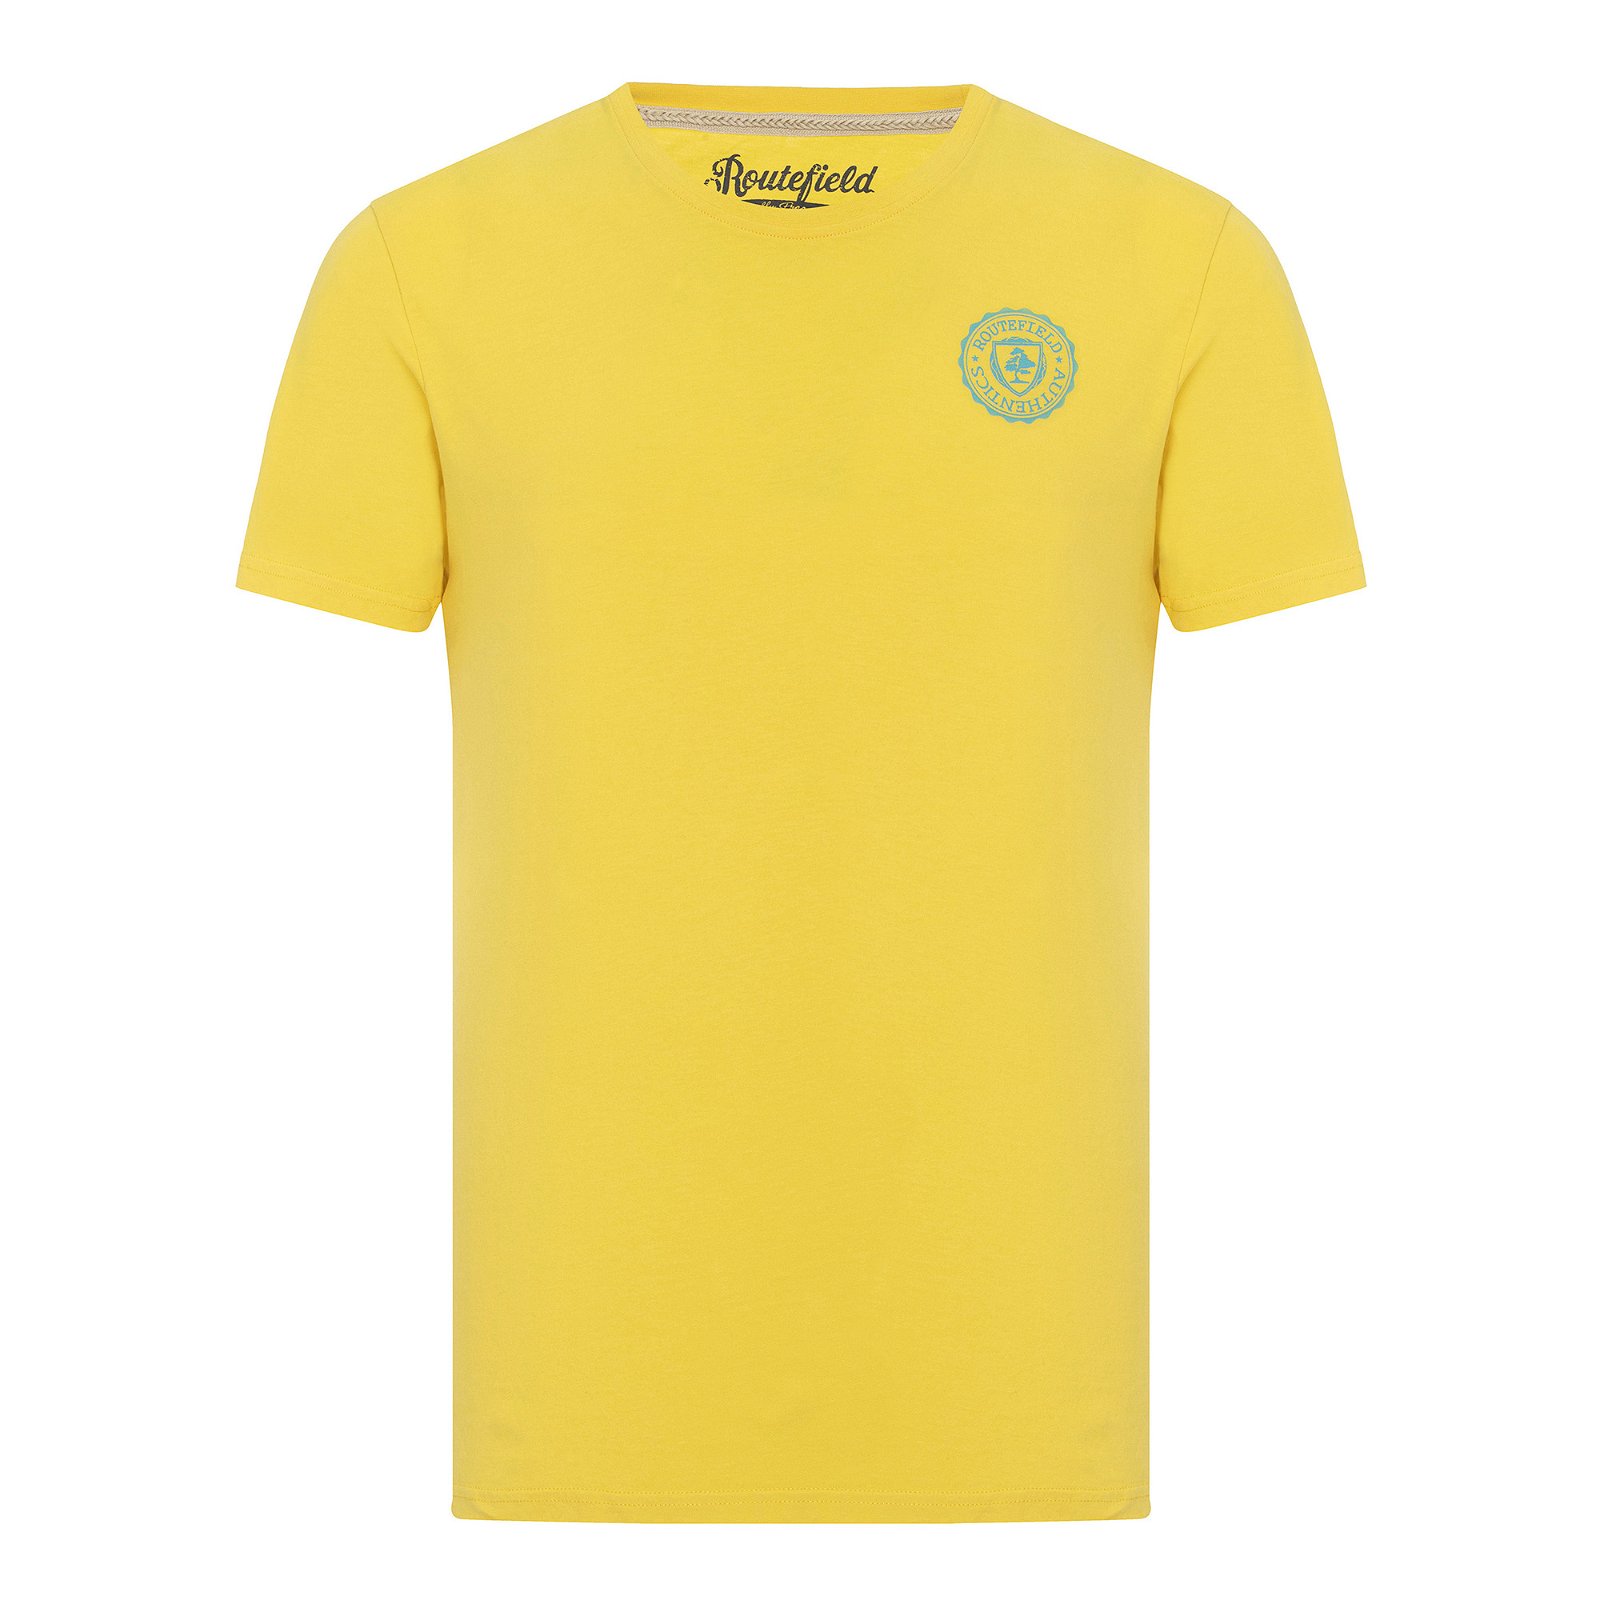 Routefield Timothy Erkek Tişört - Sarı - 1